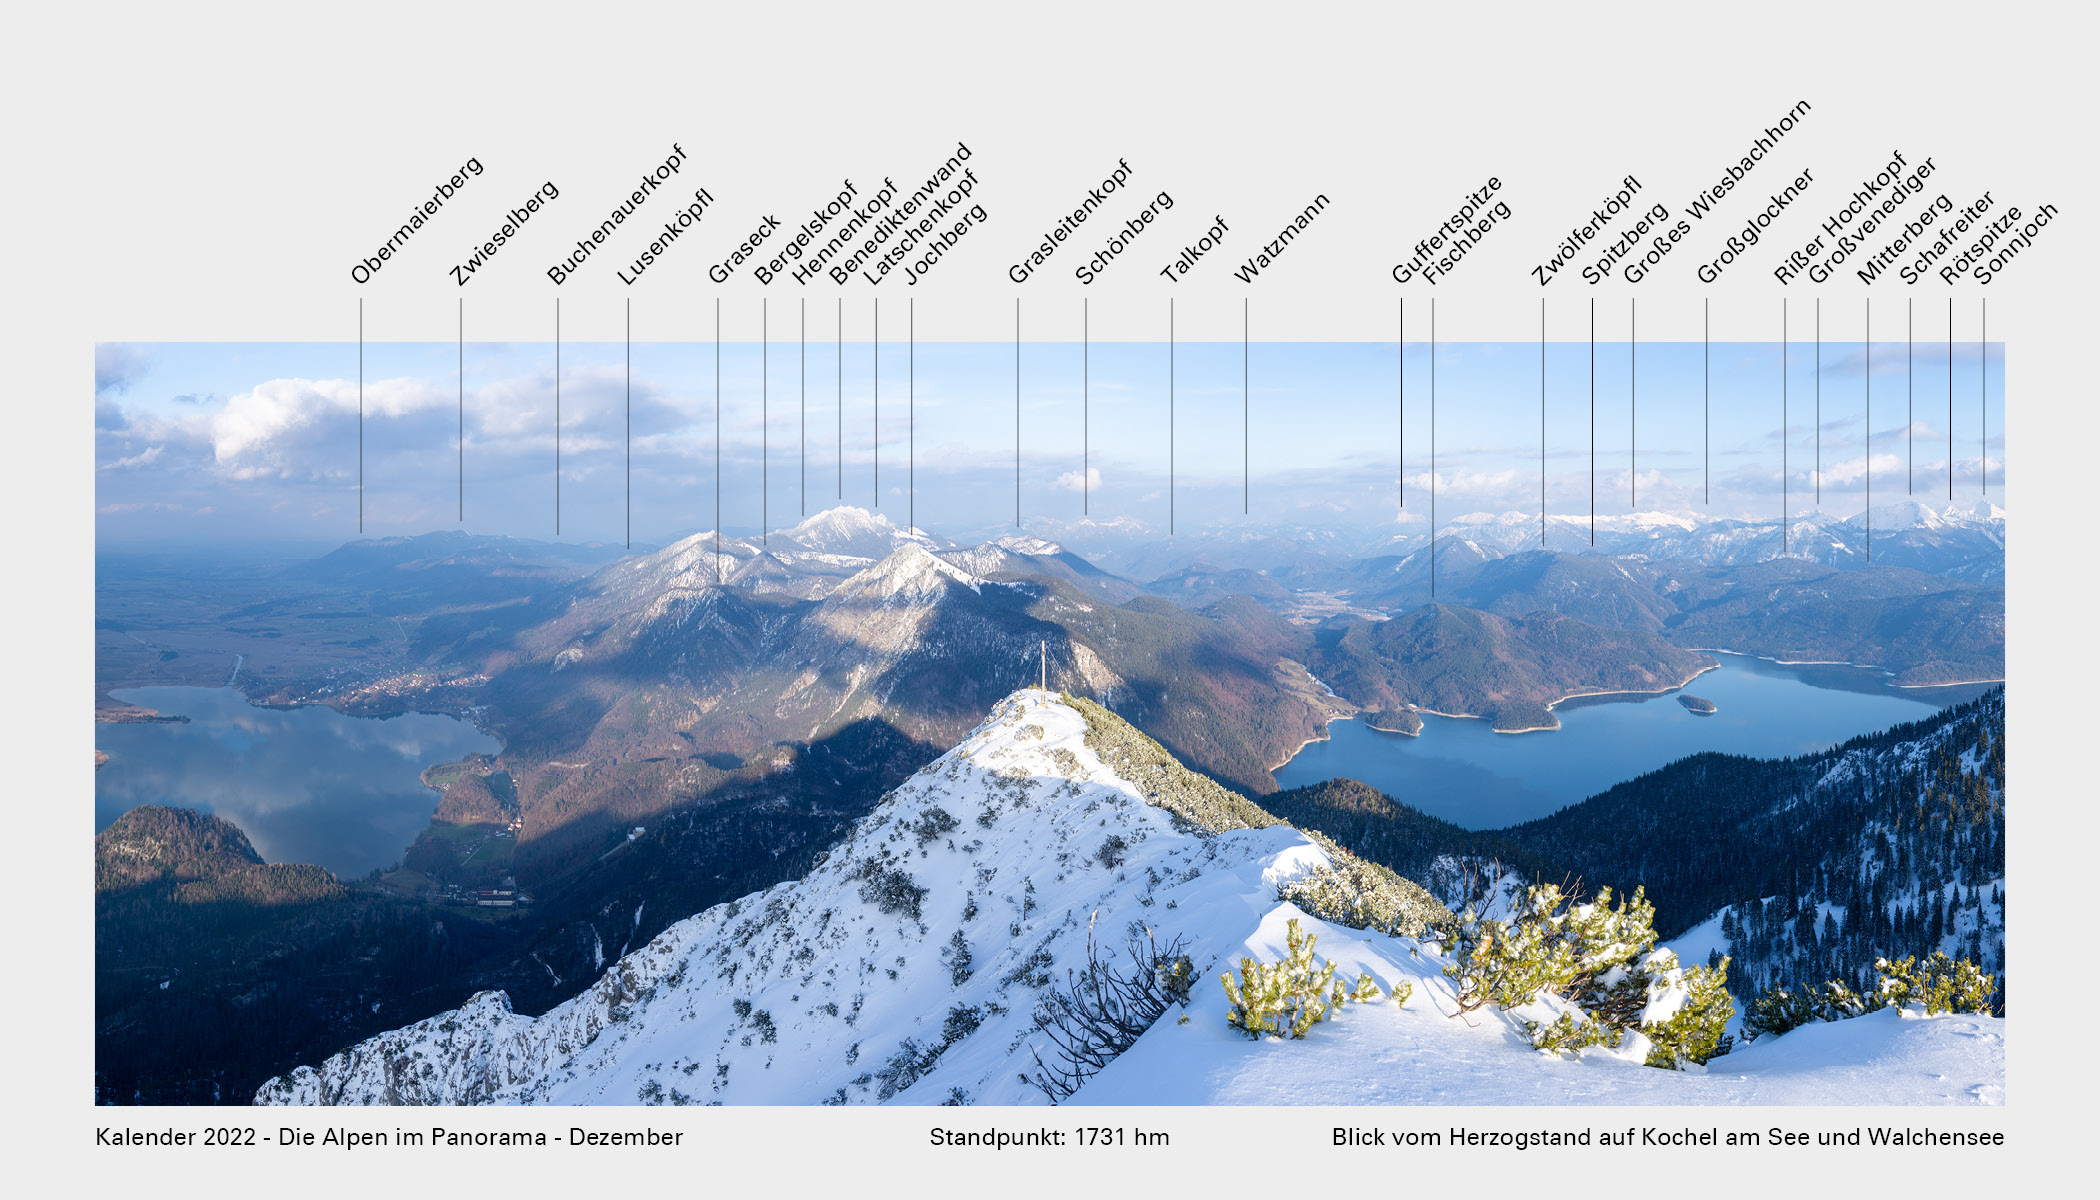 Kalender_2022_Die_Alpen_im_Panorama_Gipfel_12